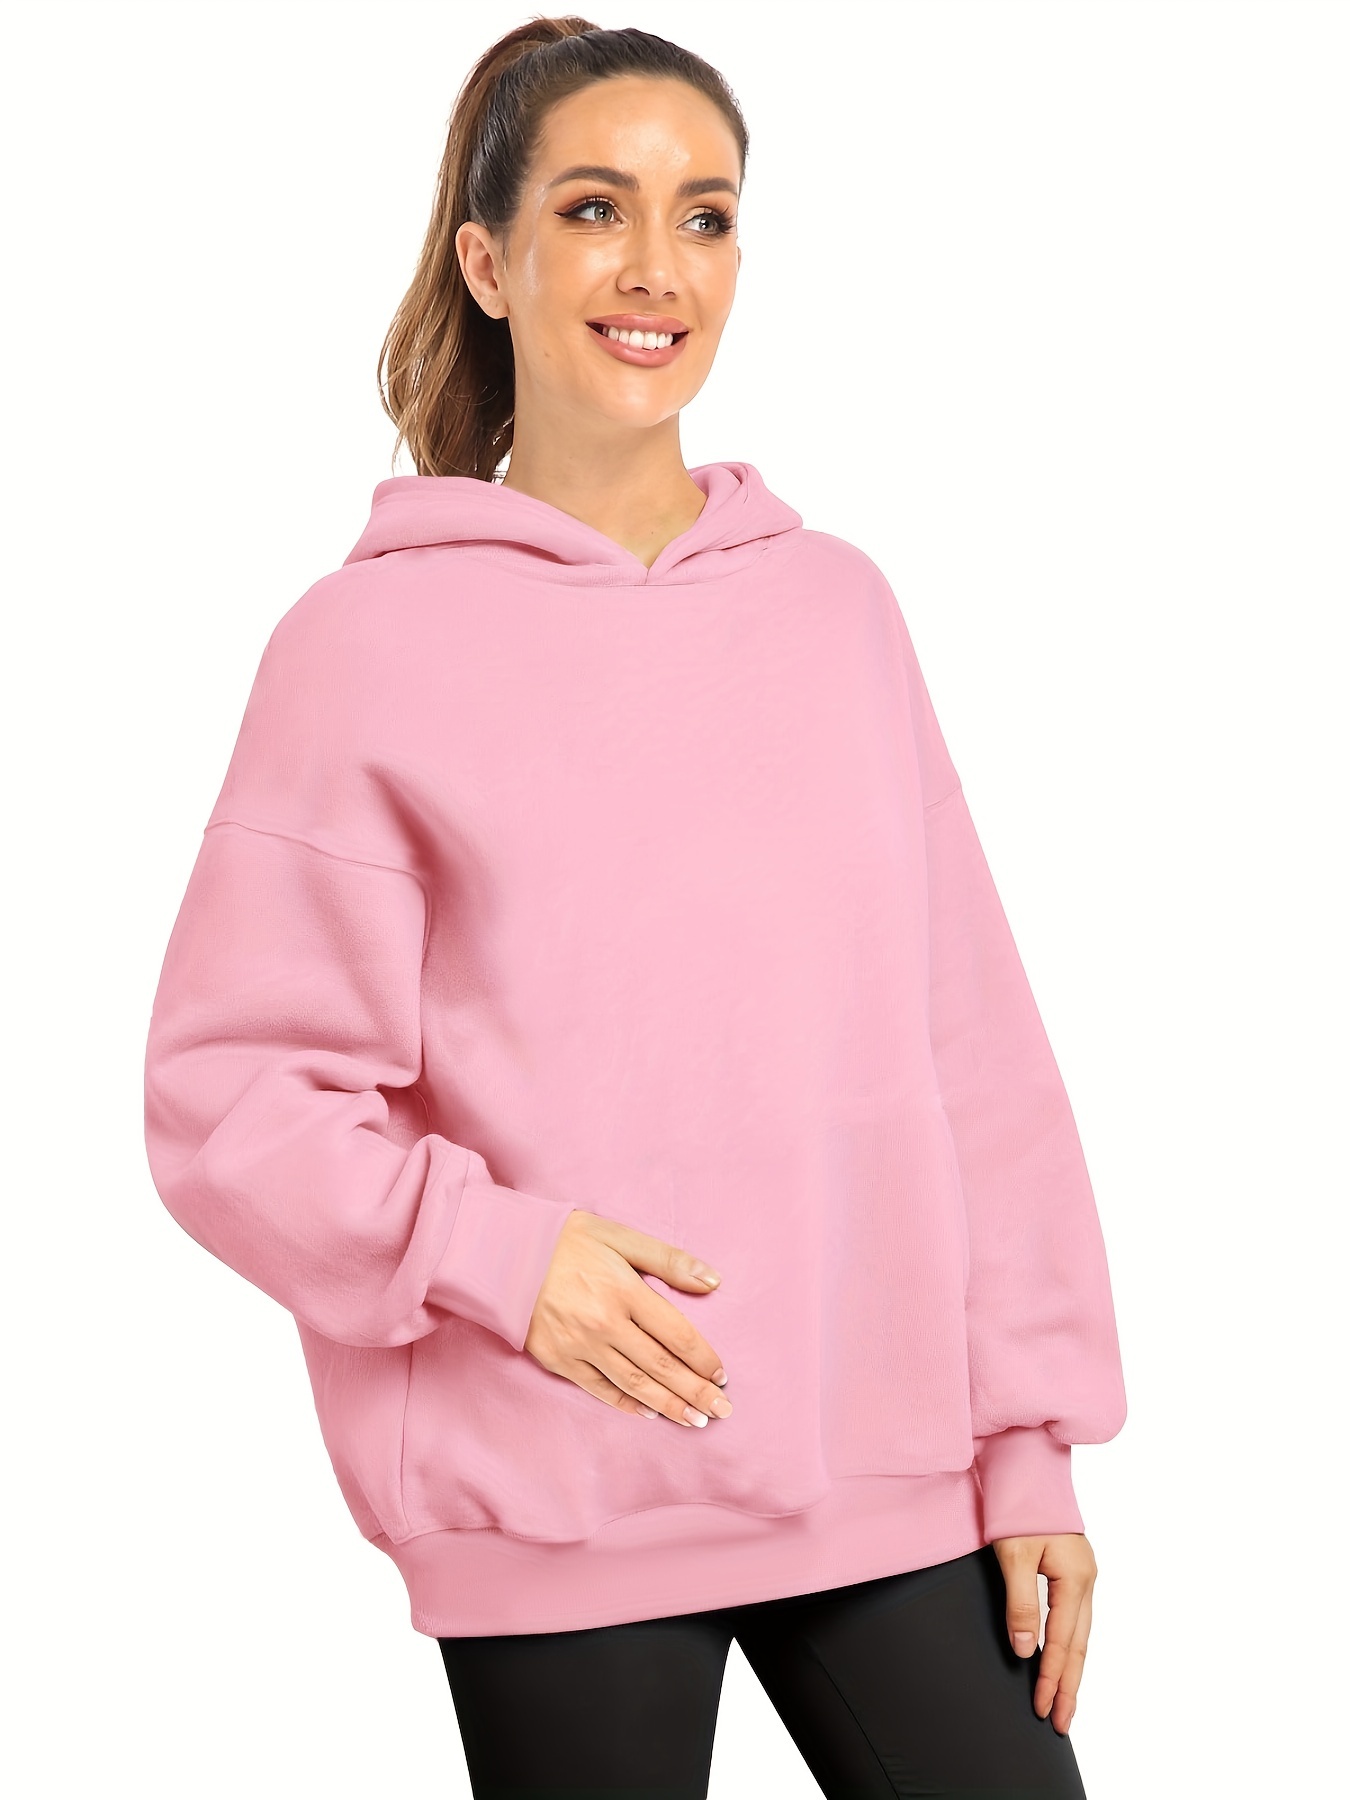 Women's Hooded Sweatshirt Lightweight Long Sleeve Pullover Hoodie